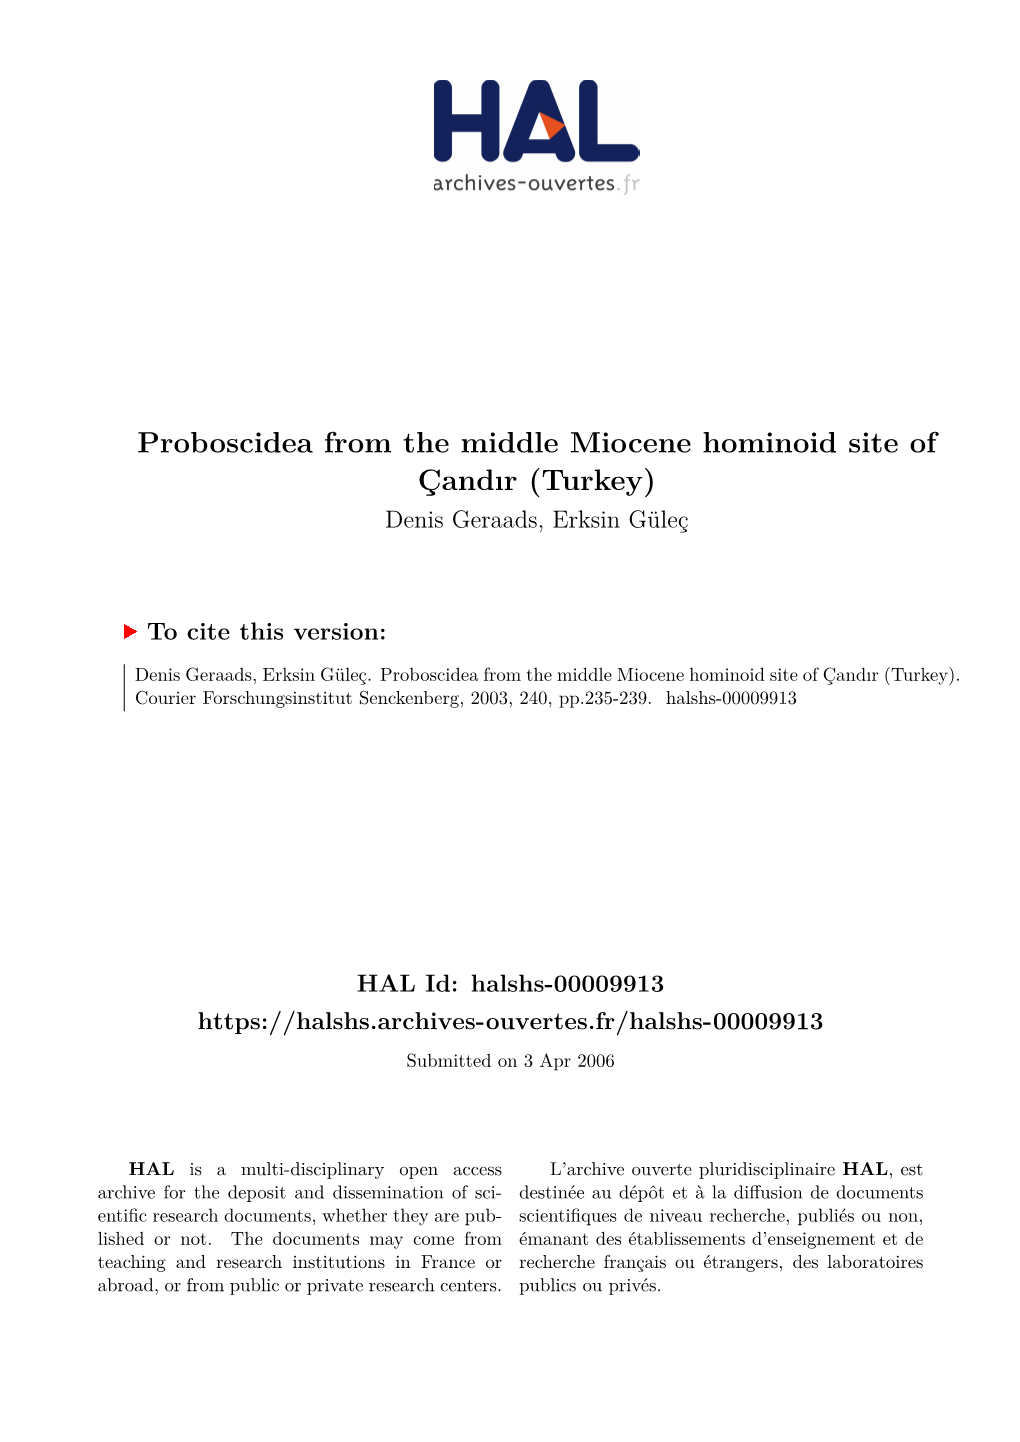 Proboscidea from the Middle Miocene Hominoid Site of Çandır (Turkey) Denis Geraads, Erksin Güleç